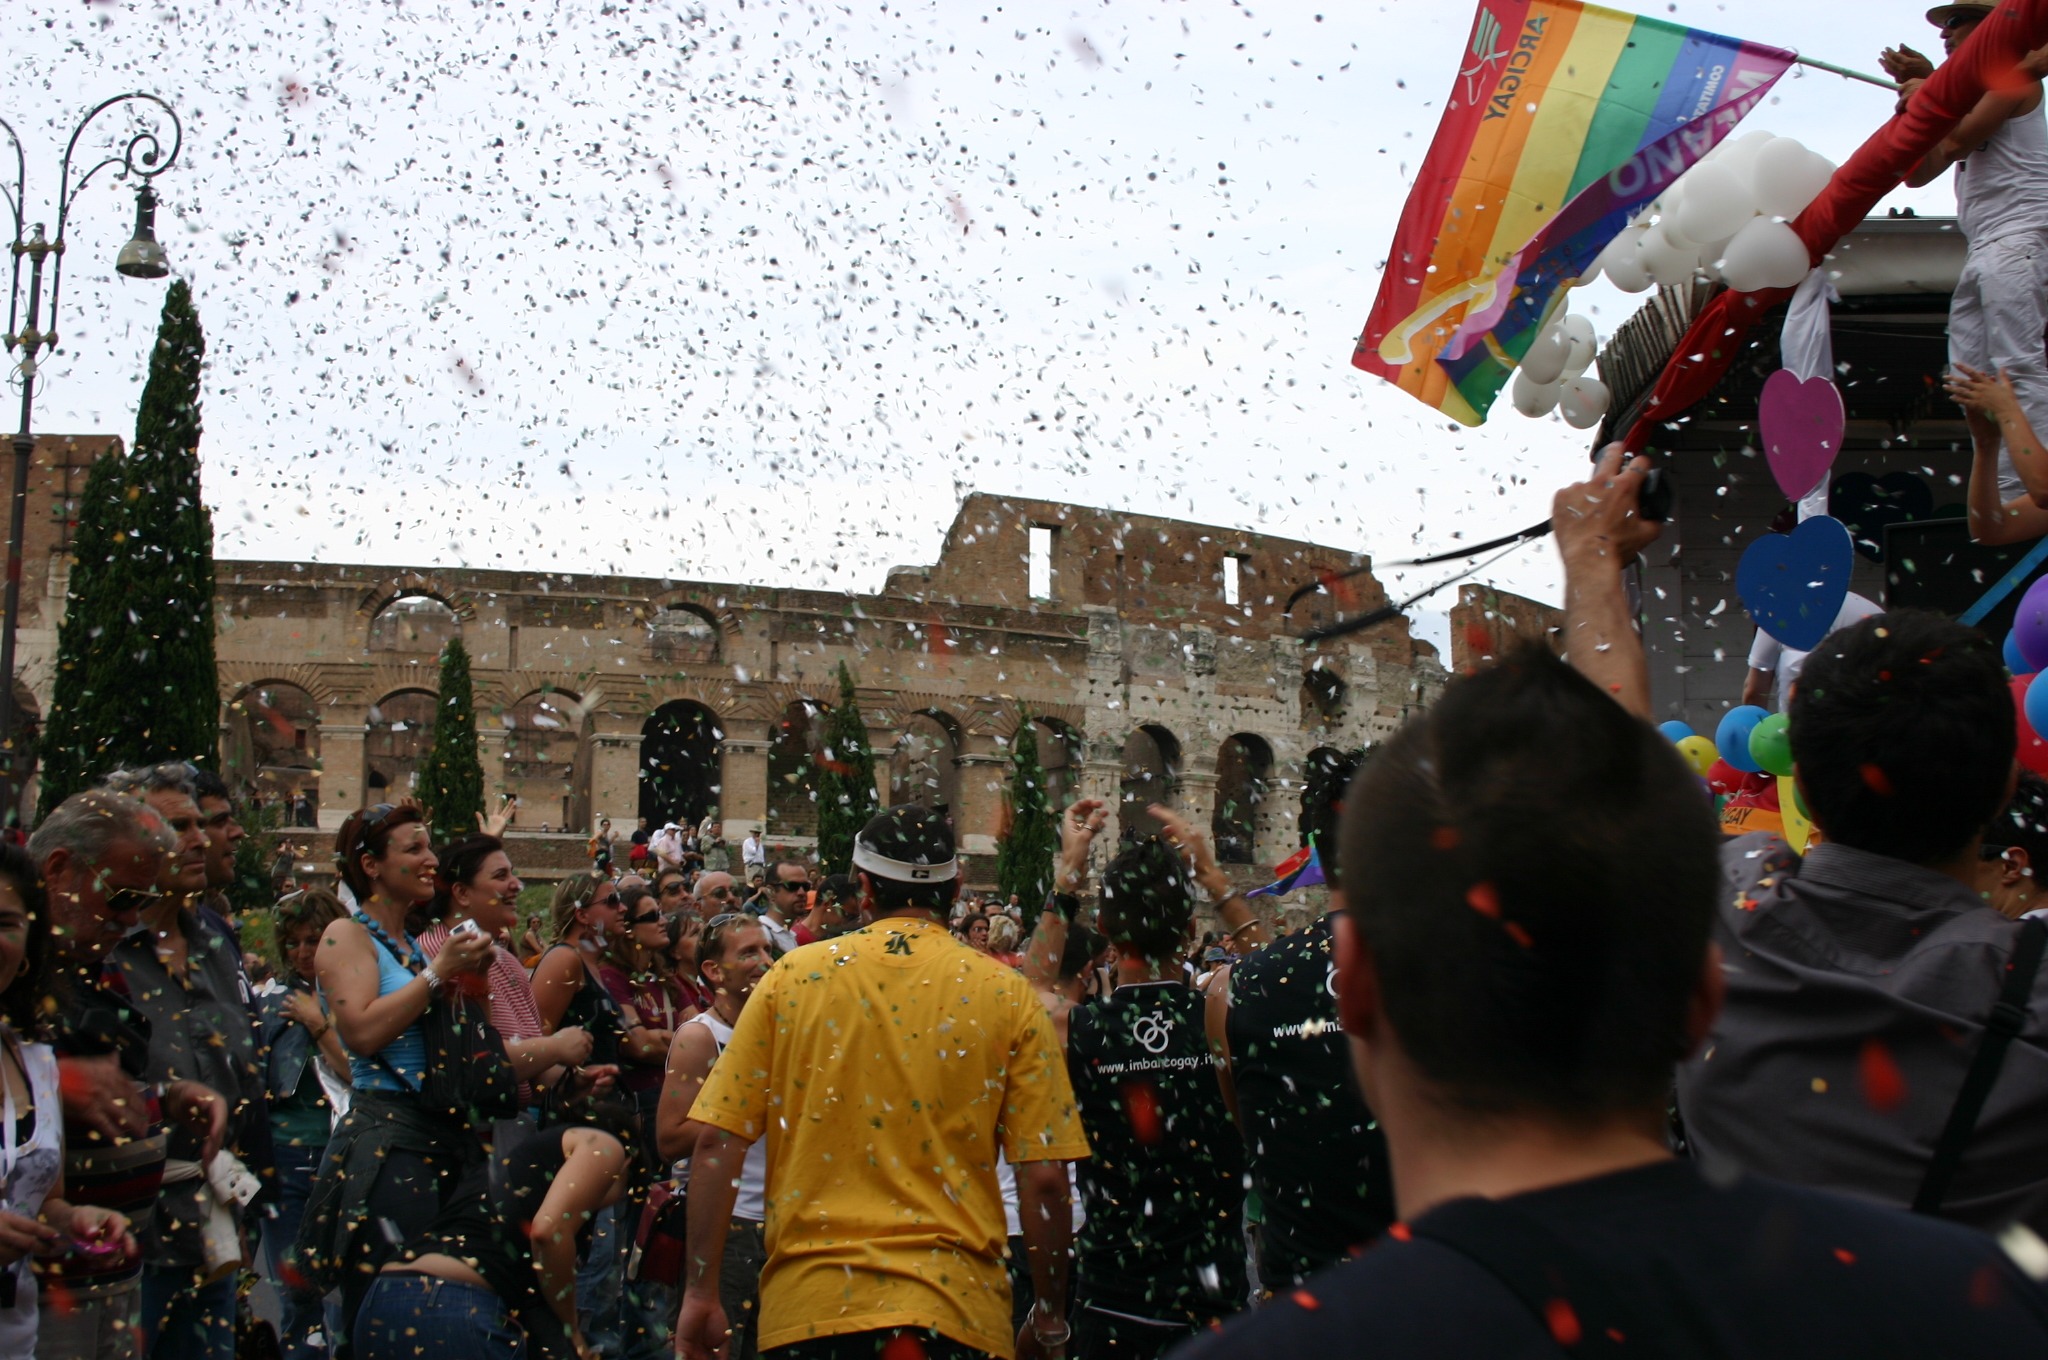 Des confettis tombant du ciel lors d'un événement culturel gay à Rome.